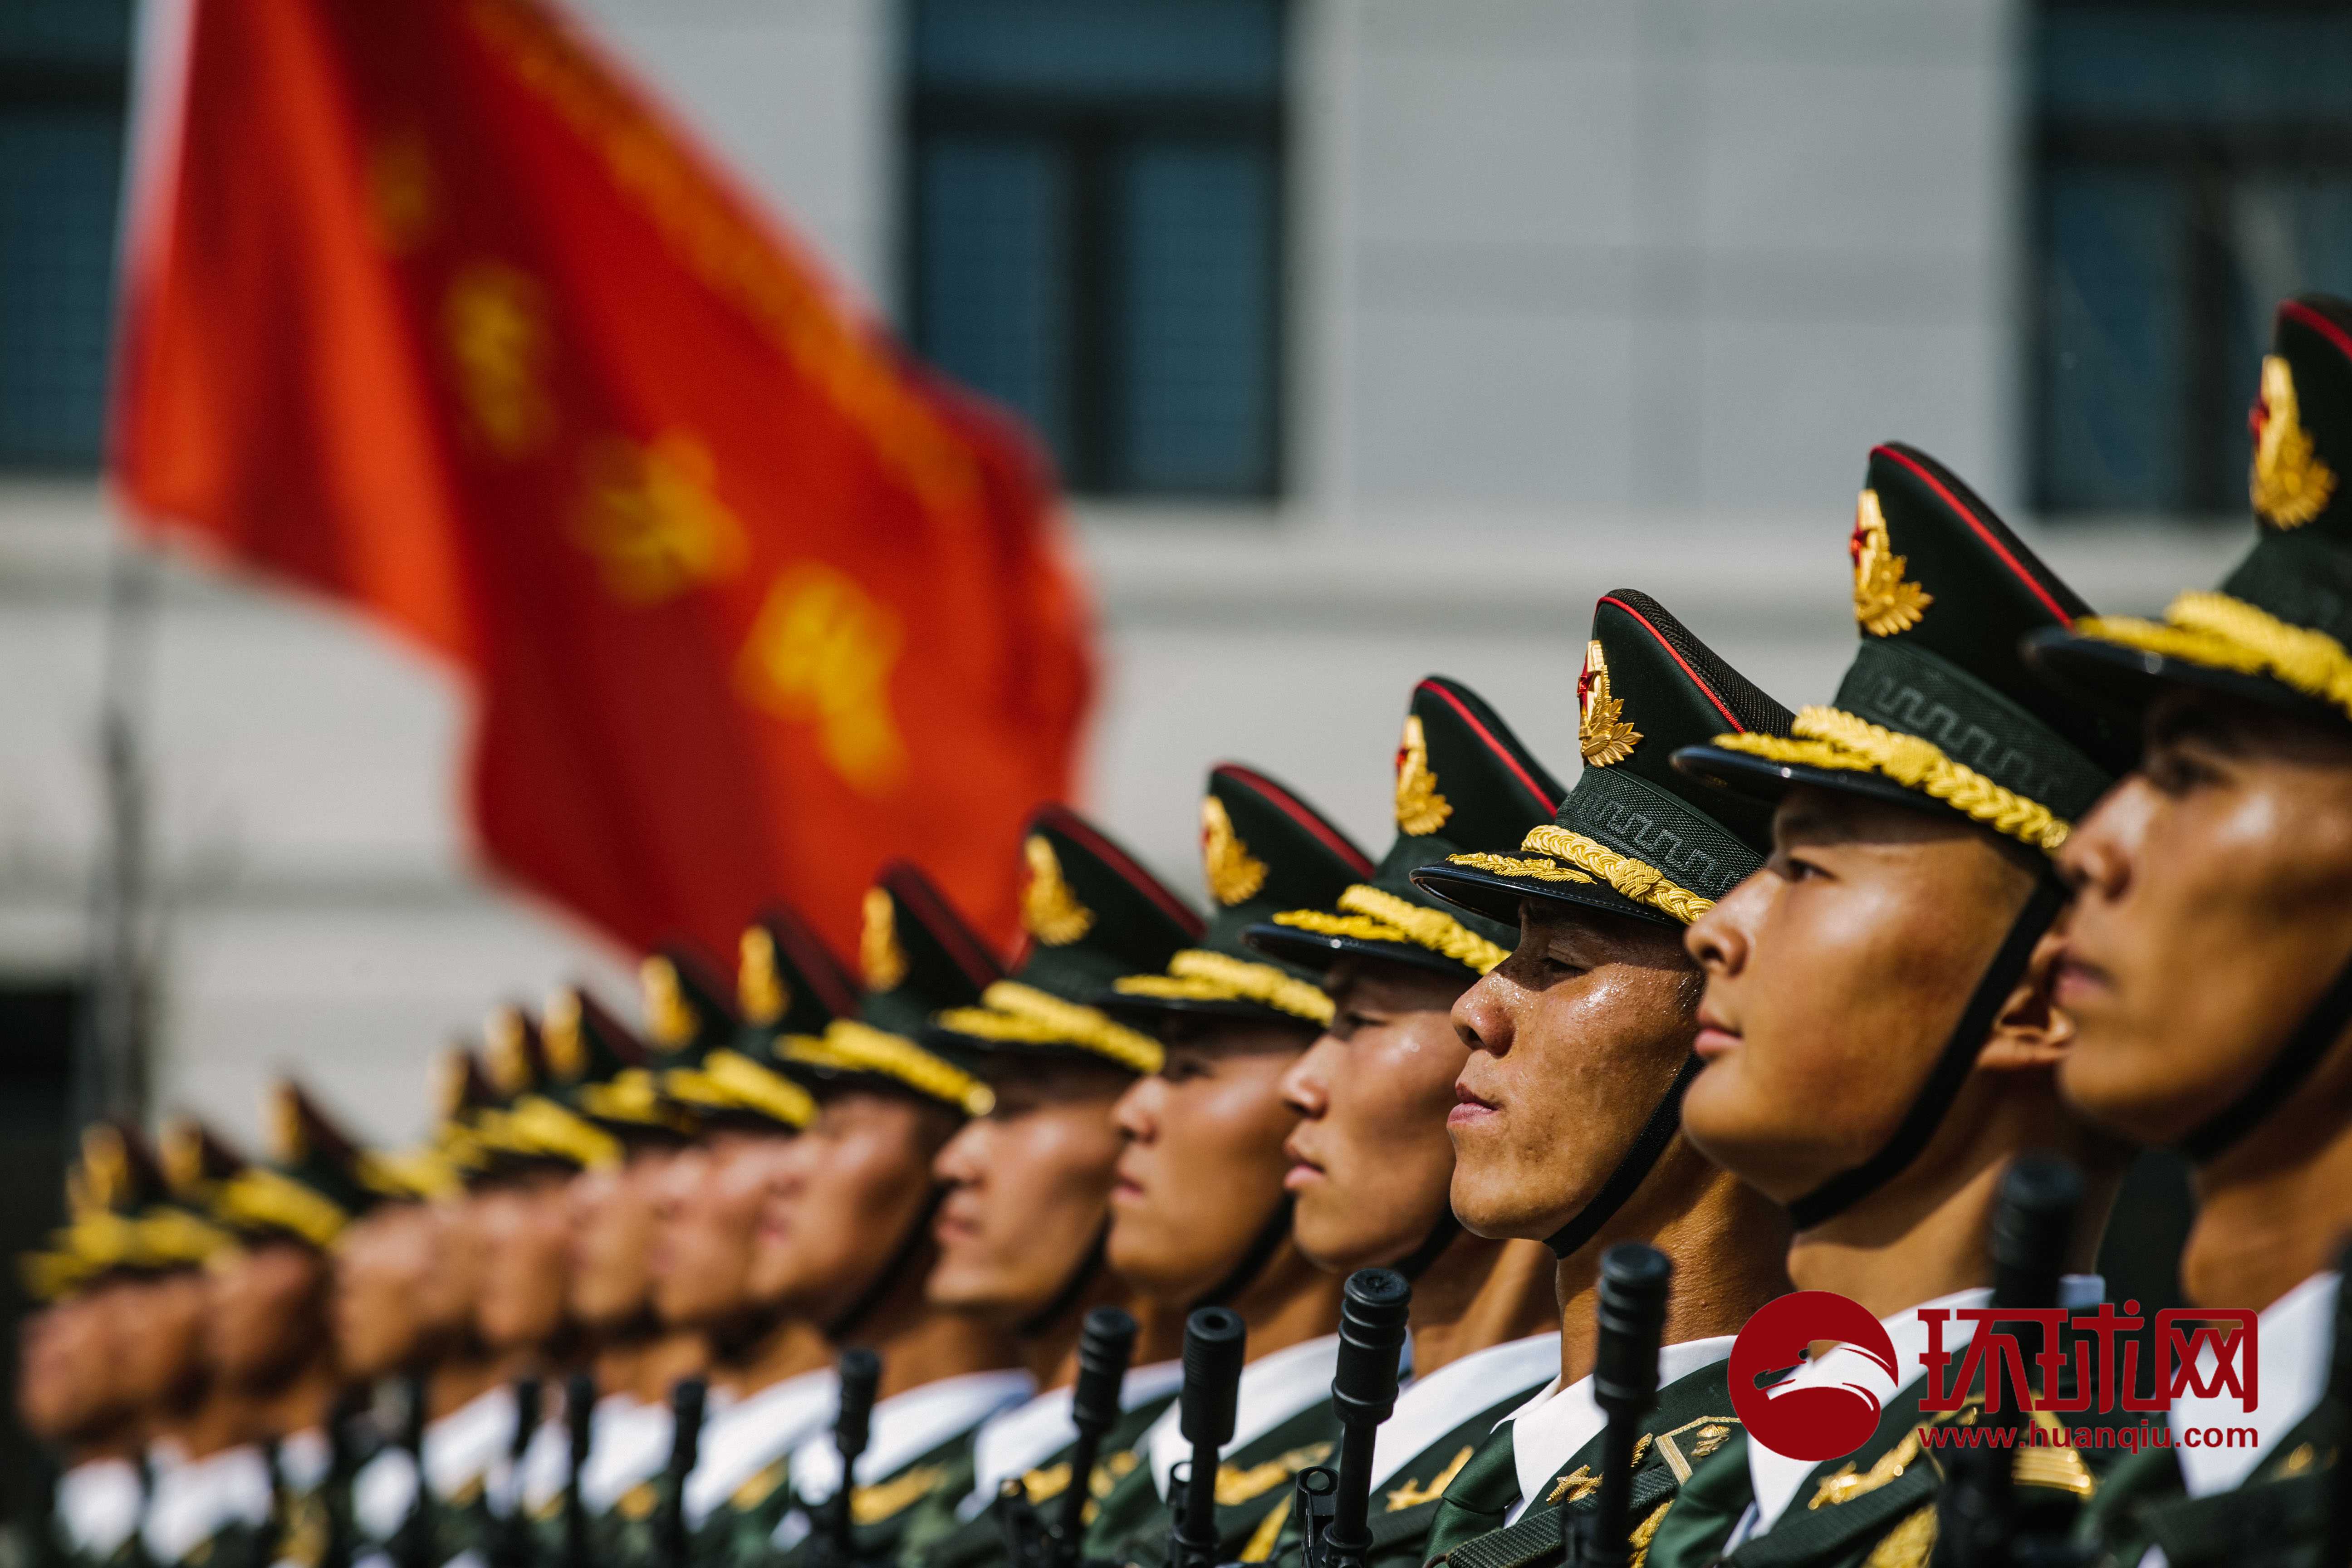 【1080P】庆祝中华人民共和国成立70周年大会、阅兵式、群众游行特别报道-bilibili(B站)无水印视频解析——YIUIOS易柚斯